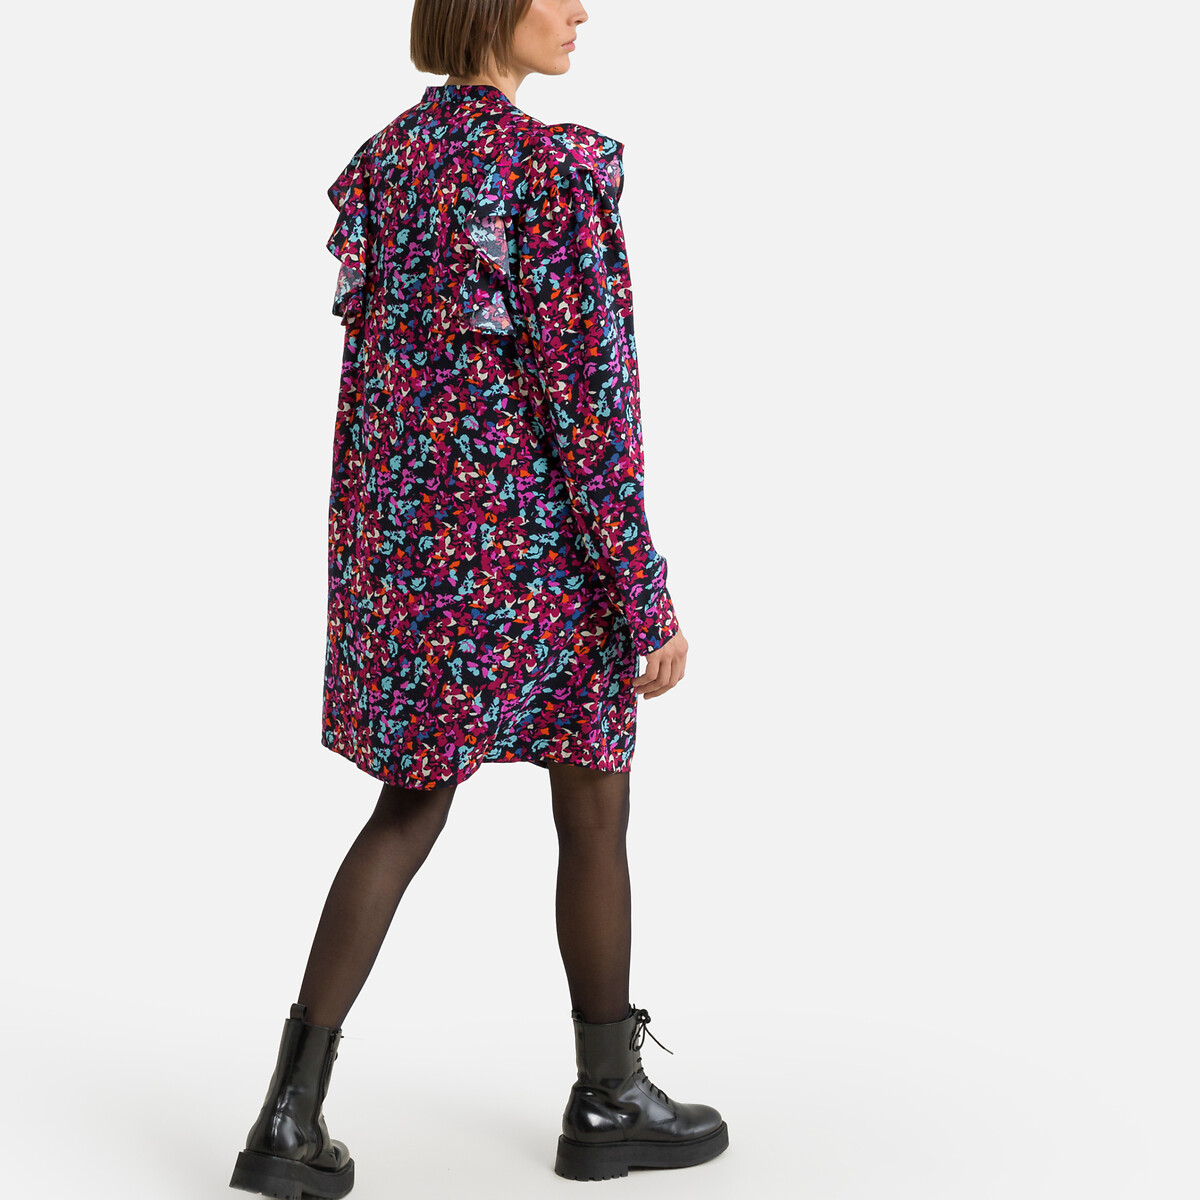 Платье С воротником-стойкой длинные рукава цветочный принт M разноцветный LaRedoute, размер M - фото 4